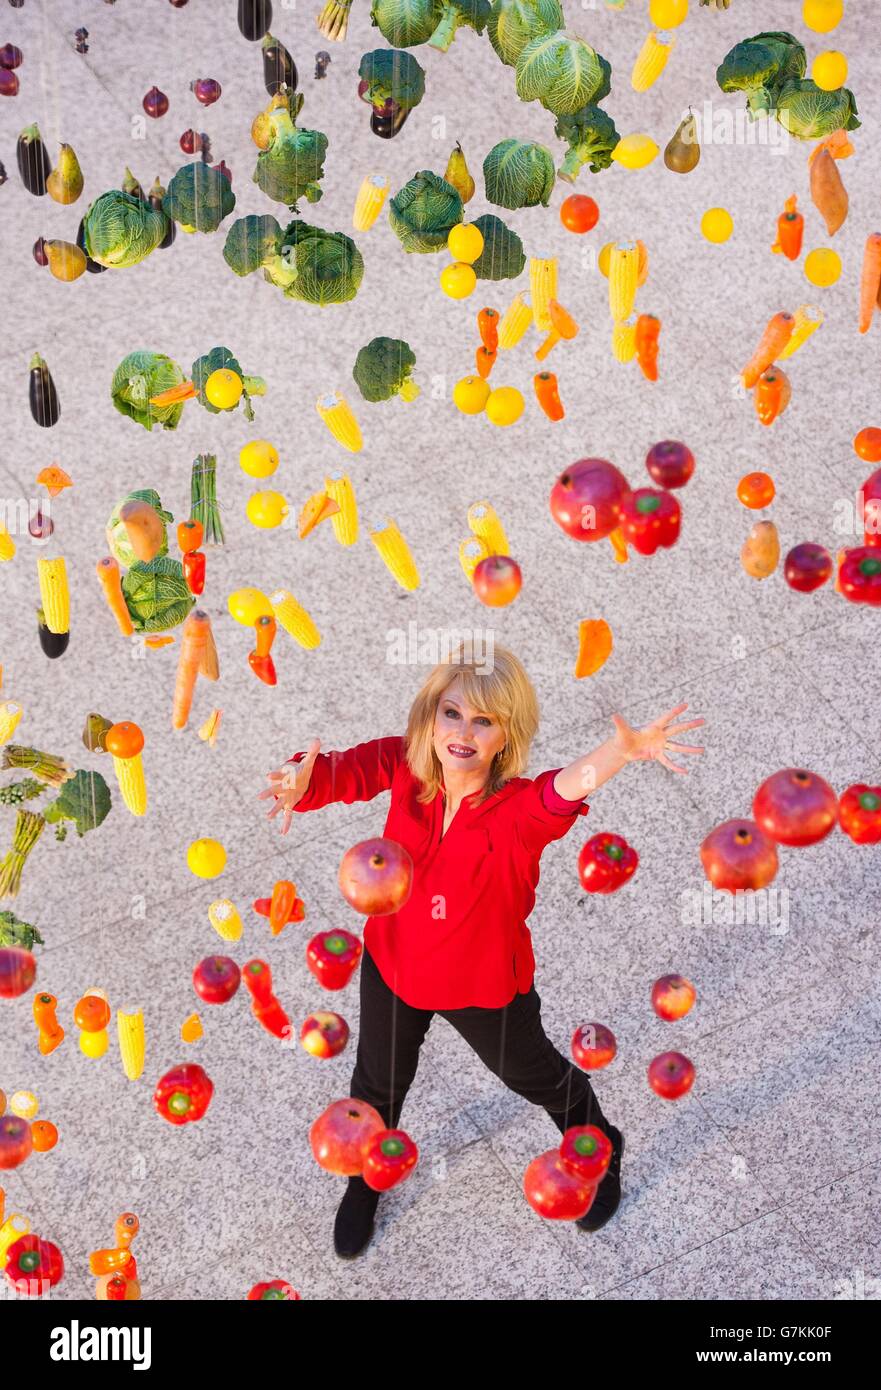 L'actrice Joanna Lumley pose avec une exposition en forme d'arc-en-ciel de 1,000 fruits et légumes réels, dans le centre commercial Westfield de Londres, dans le cadre de la campagne M&S Eat the Rainbow, pour encourager les acheteurs à manger une plus grande variété de fruits et légumes. Banque D'Images